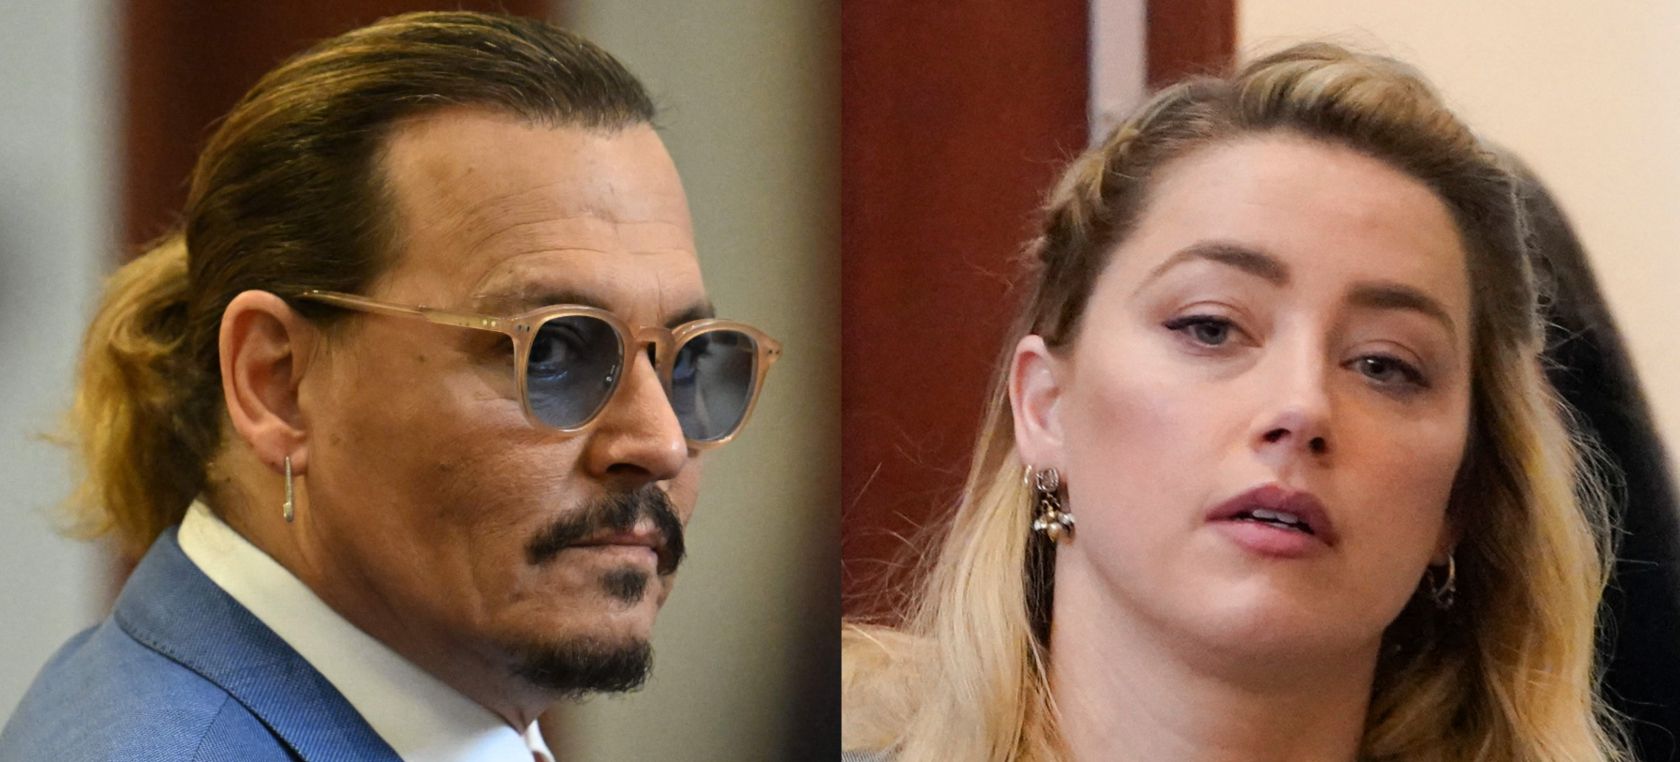 Acaba el juicio entre Johnny Depp y Amber Heard: ¿quién ganará el caso?